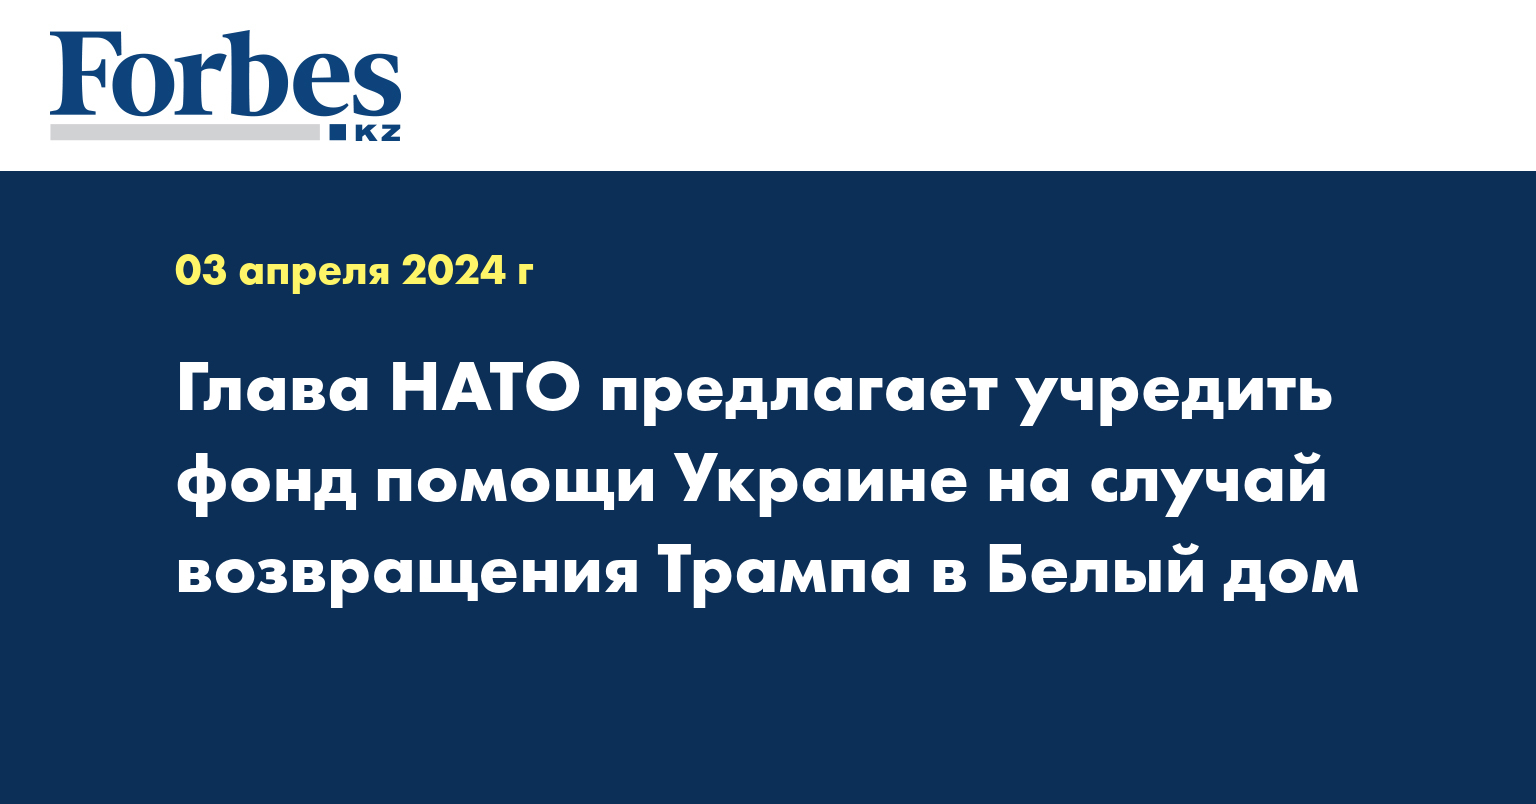 Глава НАТО предлагает учредить фонд помощи Украине на случай возвращения Трампа в Белый дом